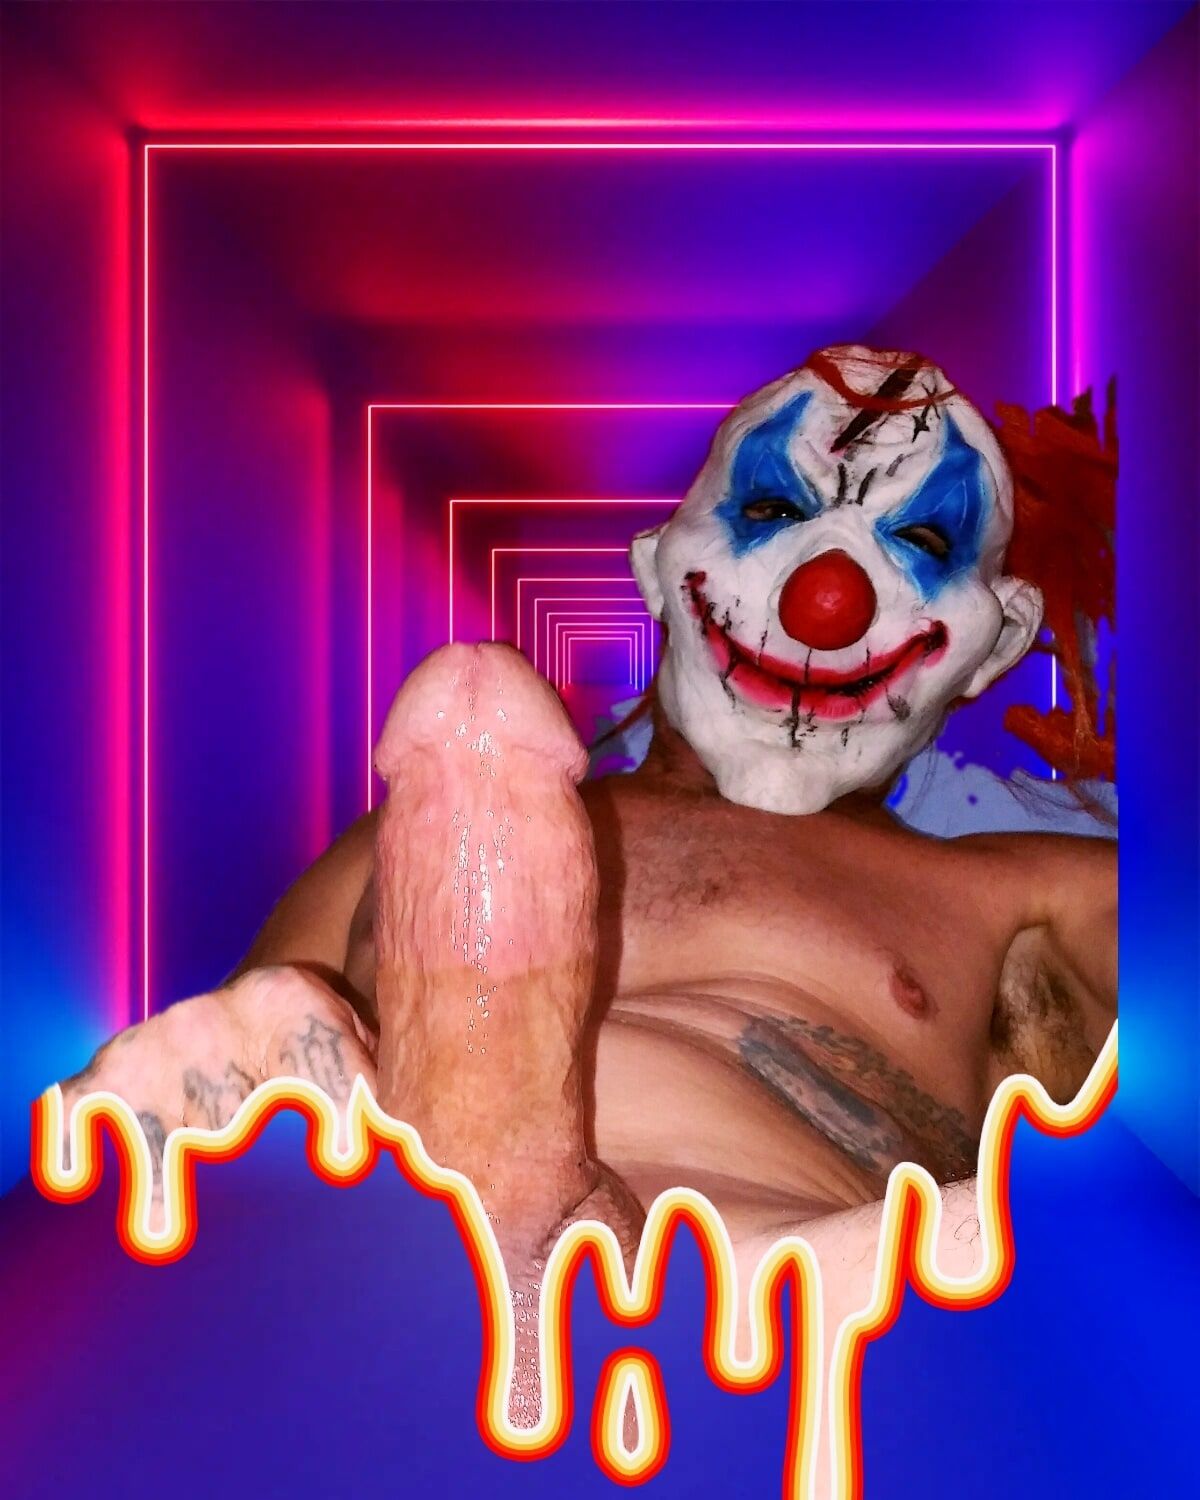 Clown cock #2